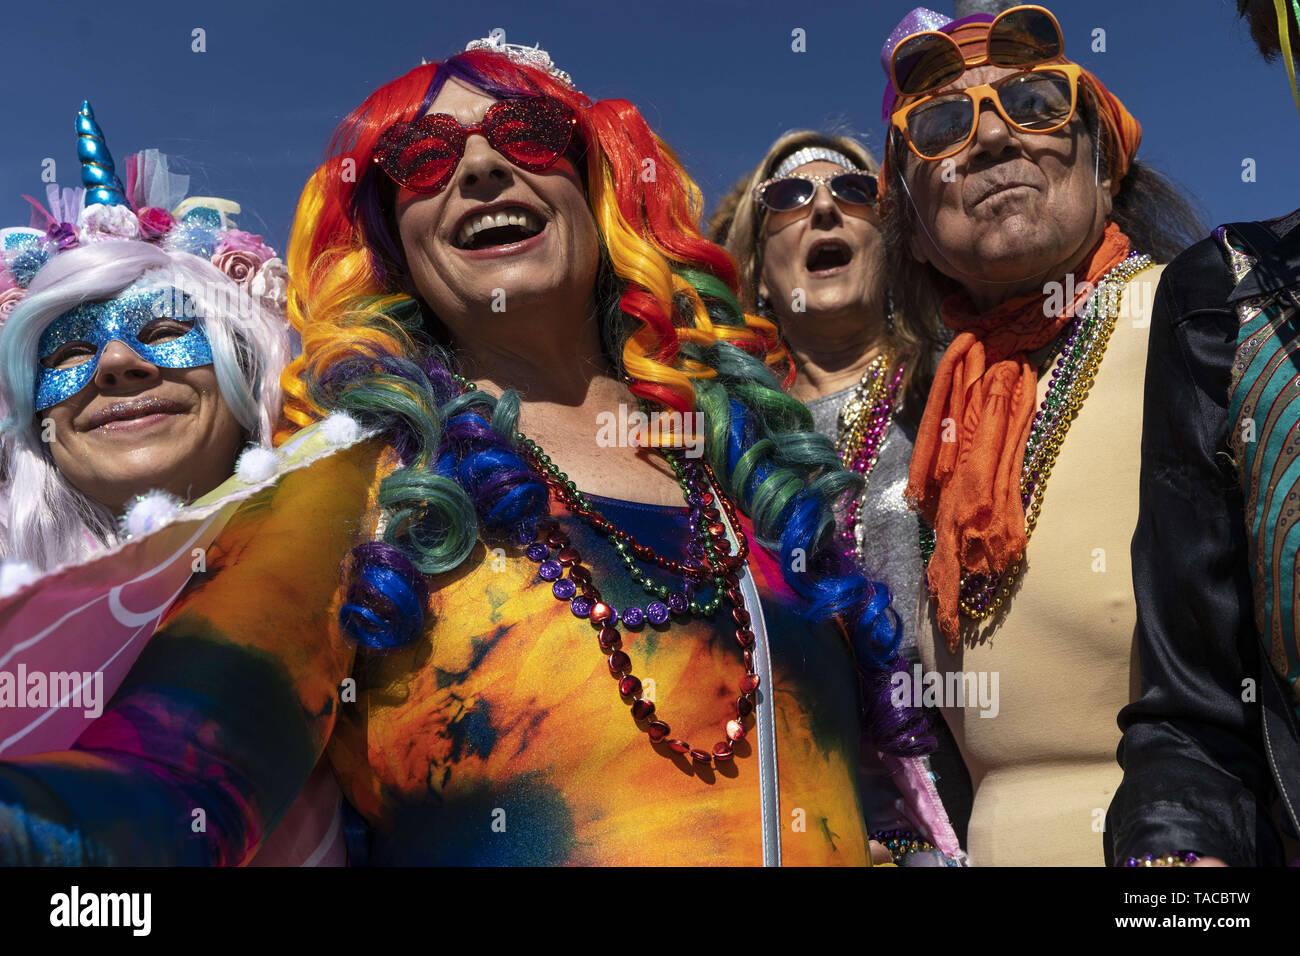 Los Angeles, USA. Feb 23, 2019. Les participants sont considérés pendant la parade à Los Angeles.Aussi connu sous le nom de Mardi Gras Mardi Gras est un carnaval culturel qui est célébré dans toute l'Amérique latine et dans certains endroits aux États-Unis le plus célèbre de la Nouvelle Orléans. Ronen Crédit : Tivony SOPA/Images/ZUMA/Alamy Fil Live News Banque D'Images